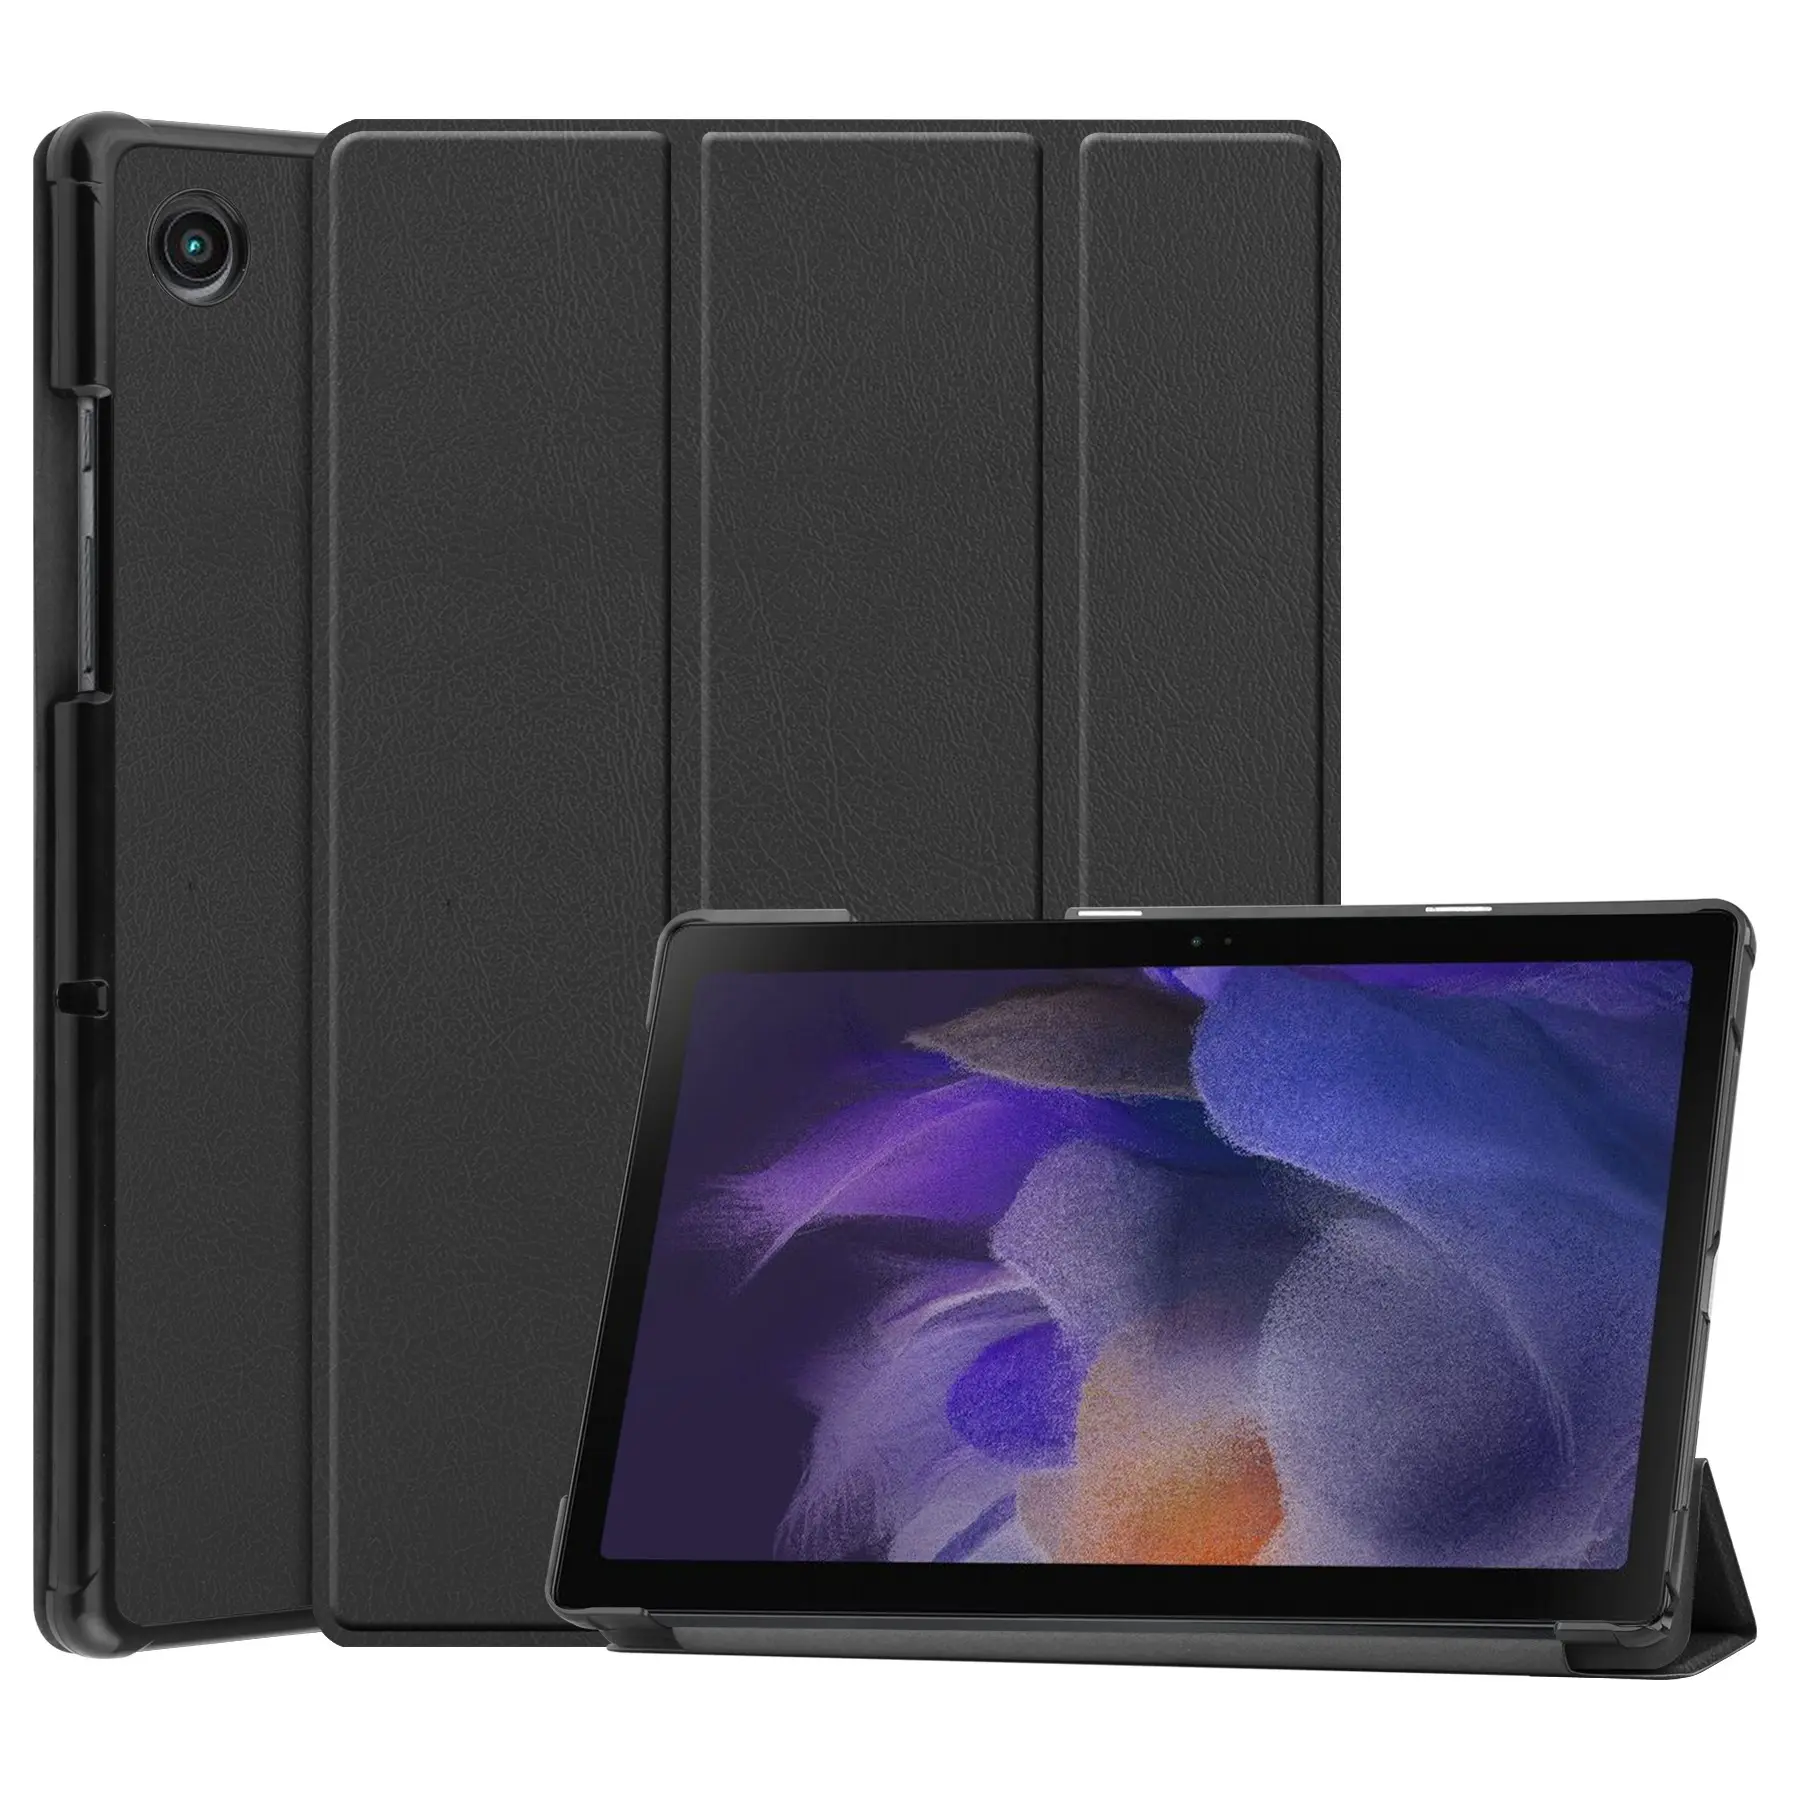 Leather Shockproof Smart Cover Tablet Case Tablet Covers For Ipad Cover For Ipad Case For Ipad Pro 12.9